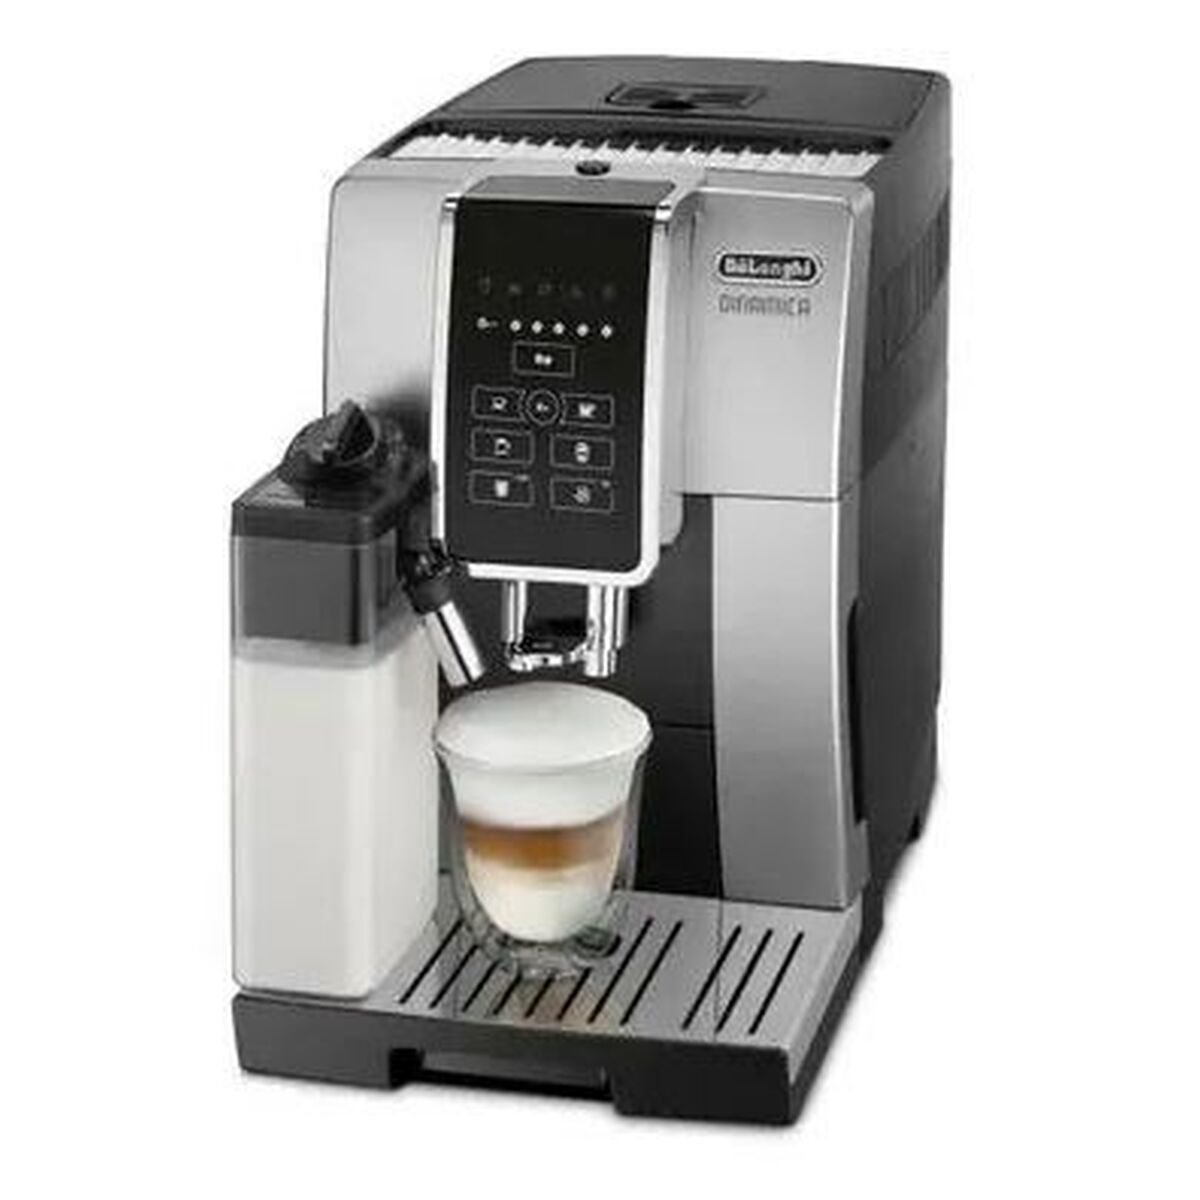 Суперавтоматическая кофеварка DeLonghi ECAM 350.50.SB Чёрный 1450 W 15 bar 300 g 1,8 L